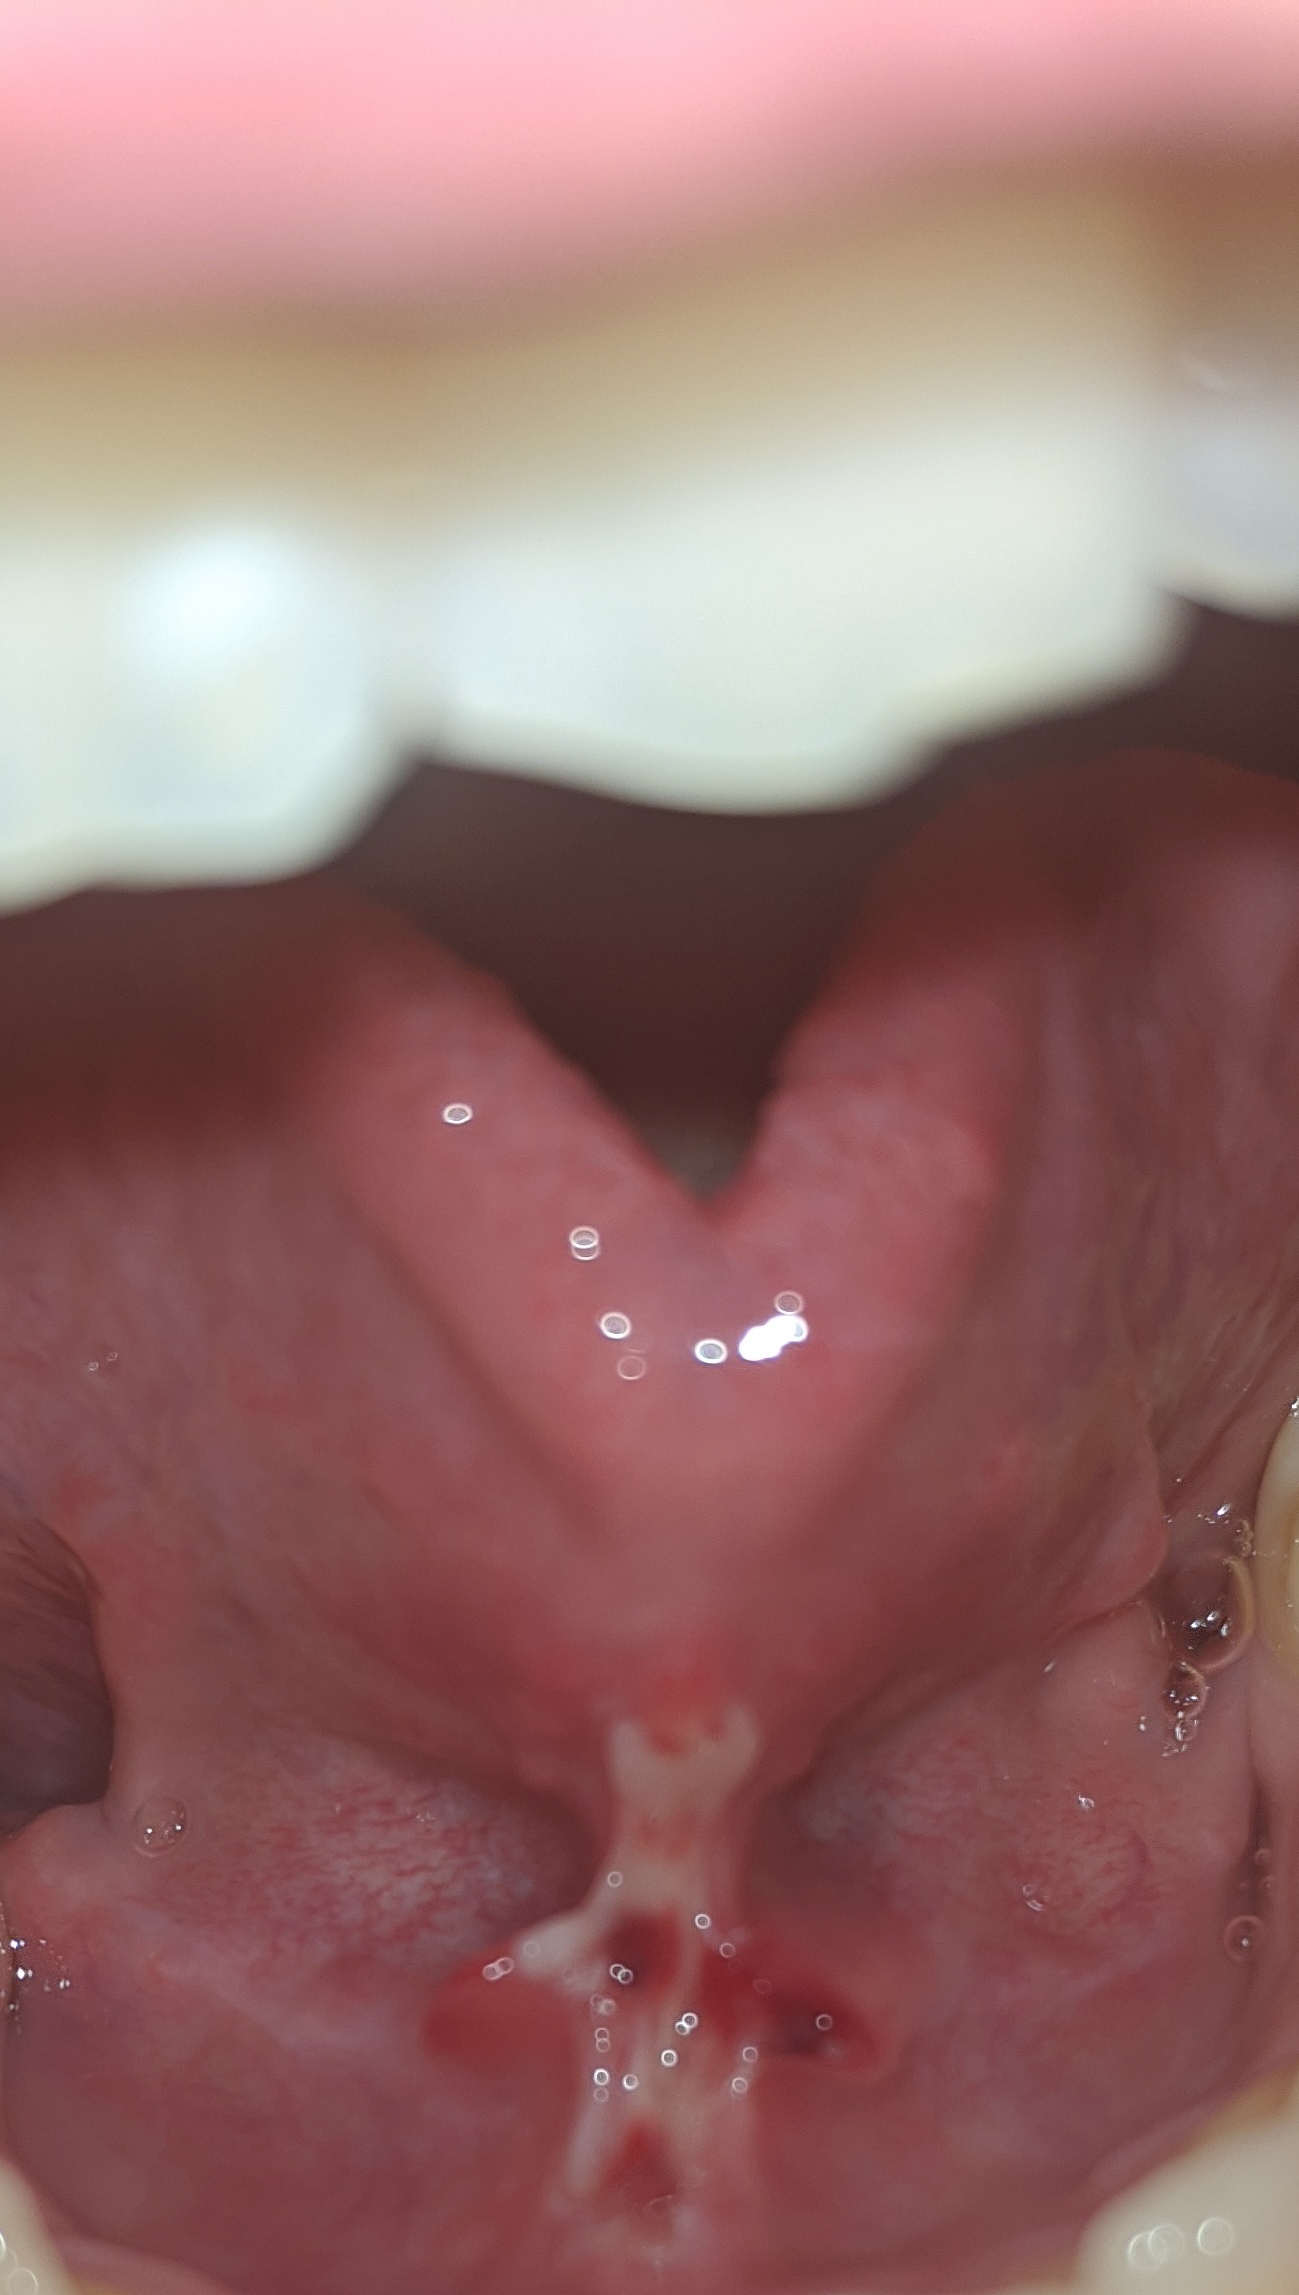 Ieri mi sono sottoposto al taglio attraverso un laser del frenulo sotto la lingua